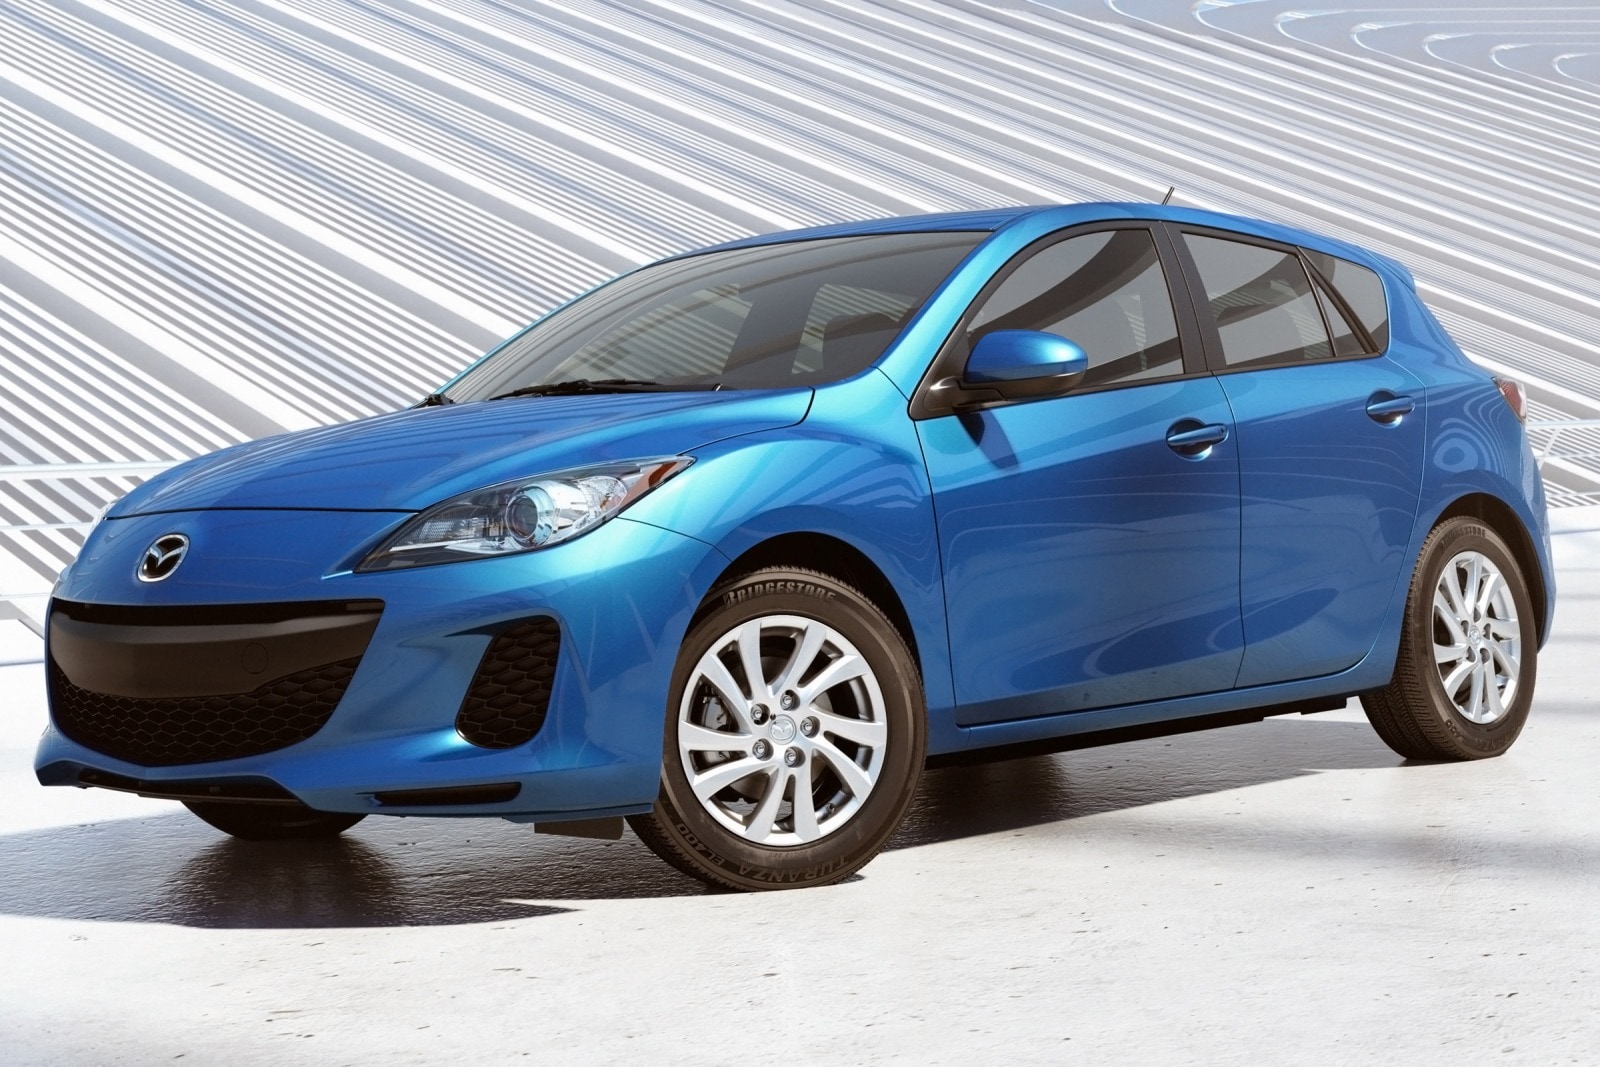 Used 2013 Mazda 3 Hatchback Review | Edmunds